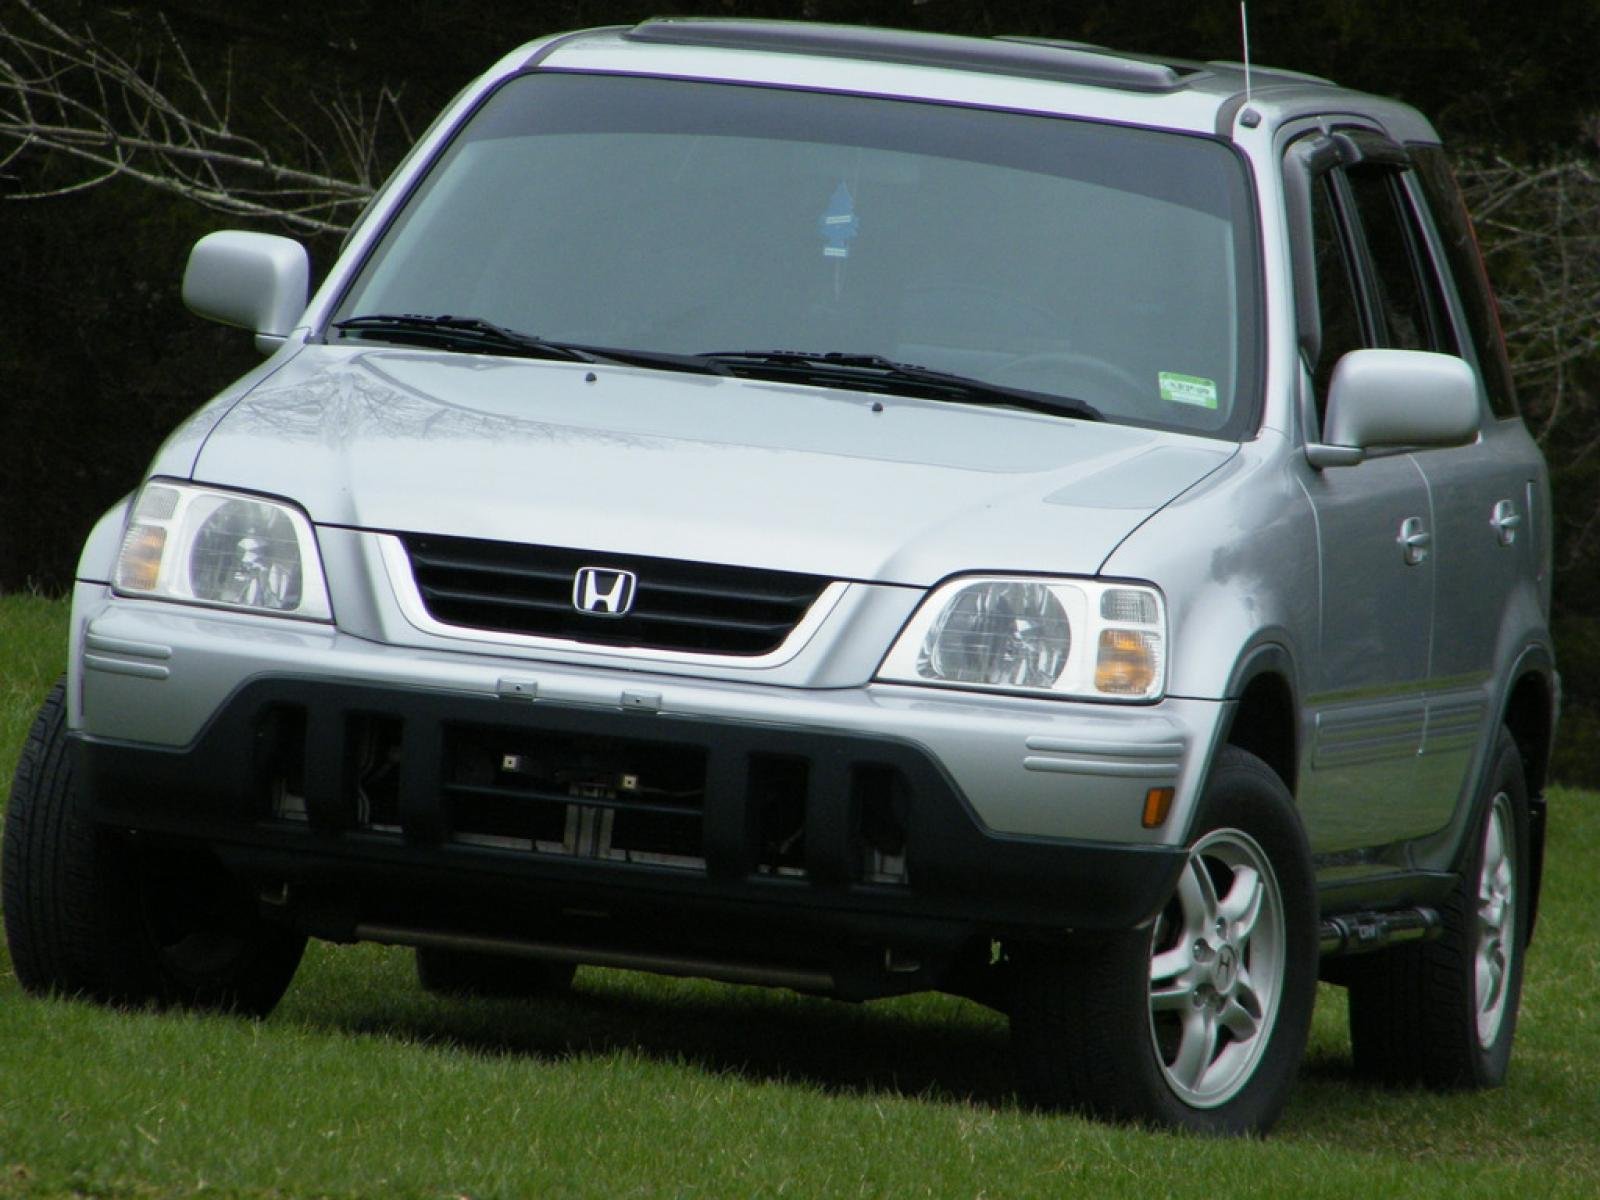 Купить хонду црв в красноярском. Honda CRV 2001. Honda CR-V 2001. Honda CR-V 1 2001. Honda CRV 2001 года.